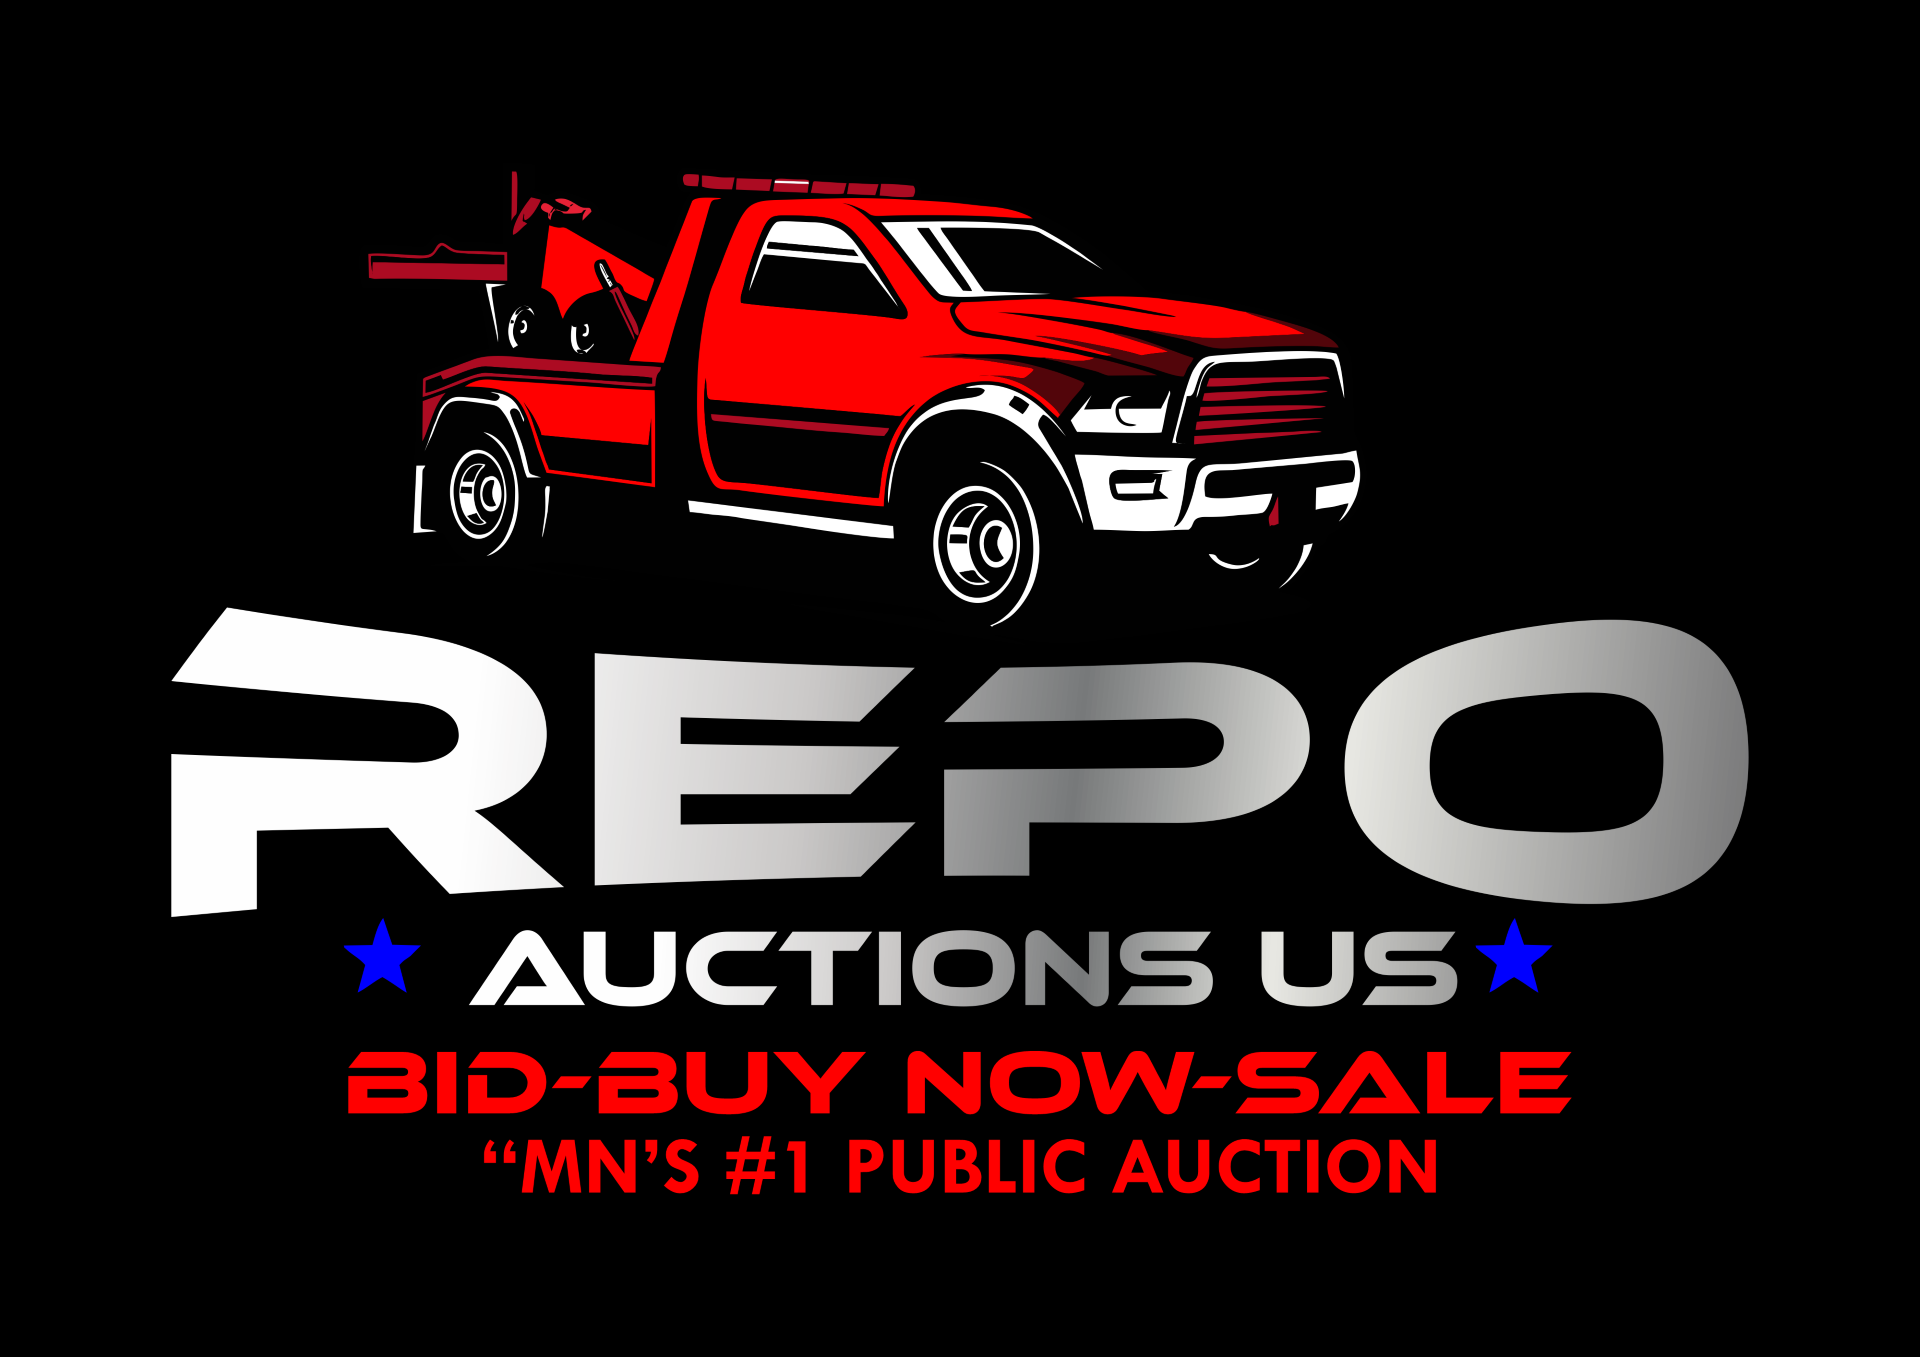 Repo Auctions U.S